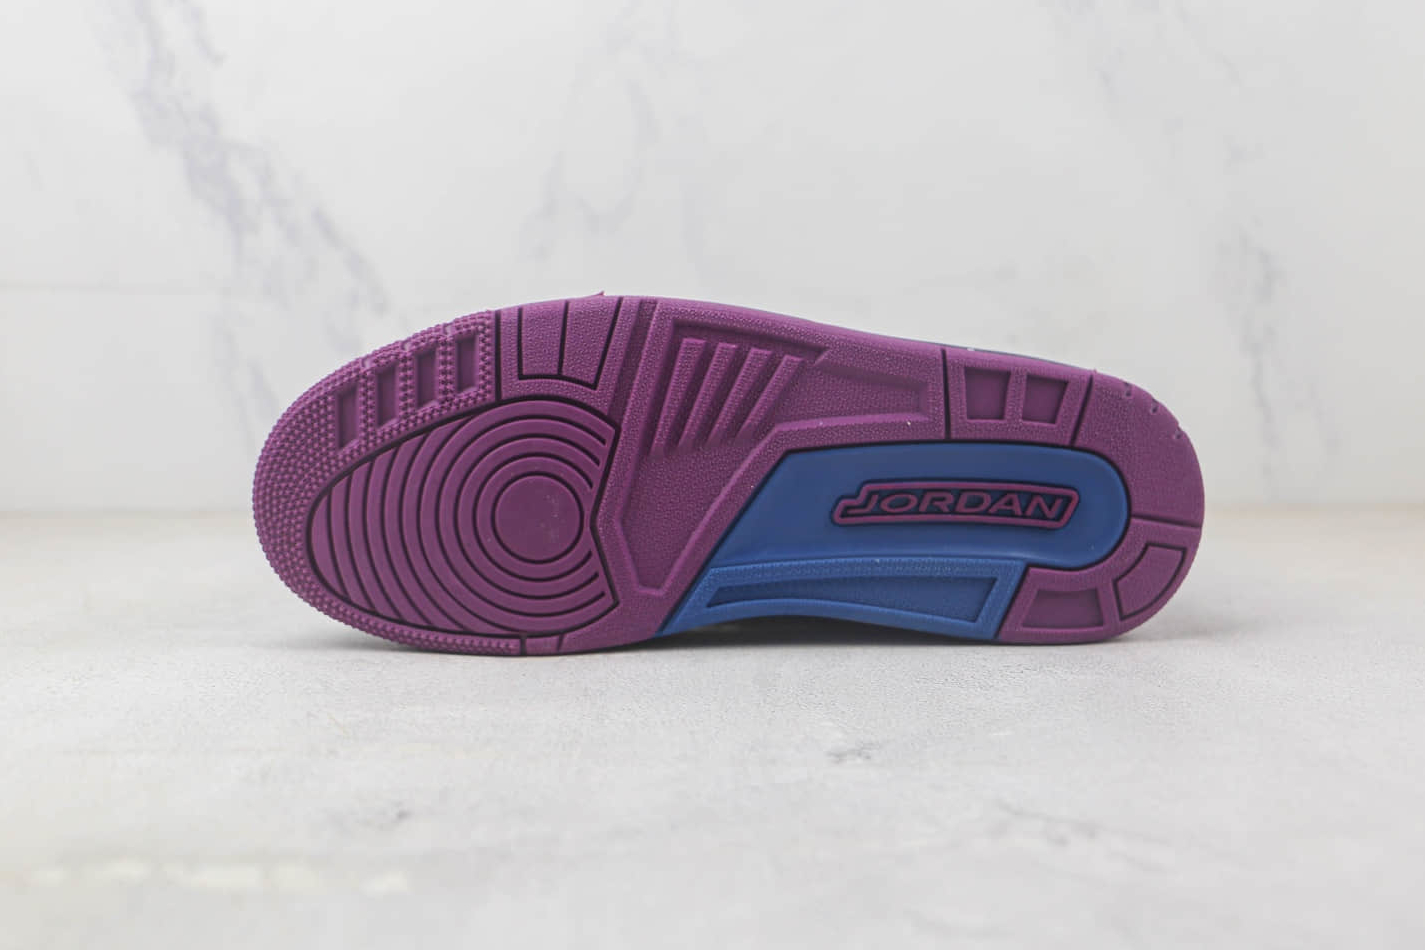 Nike Jordan Legacy 312 'Dark Grey' AV3922-005: Iconic design with a modern twist